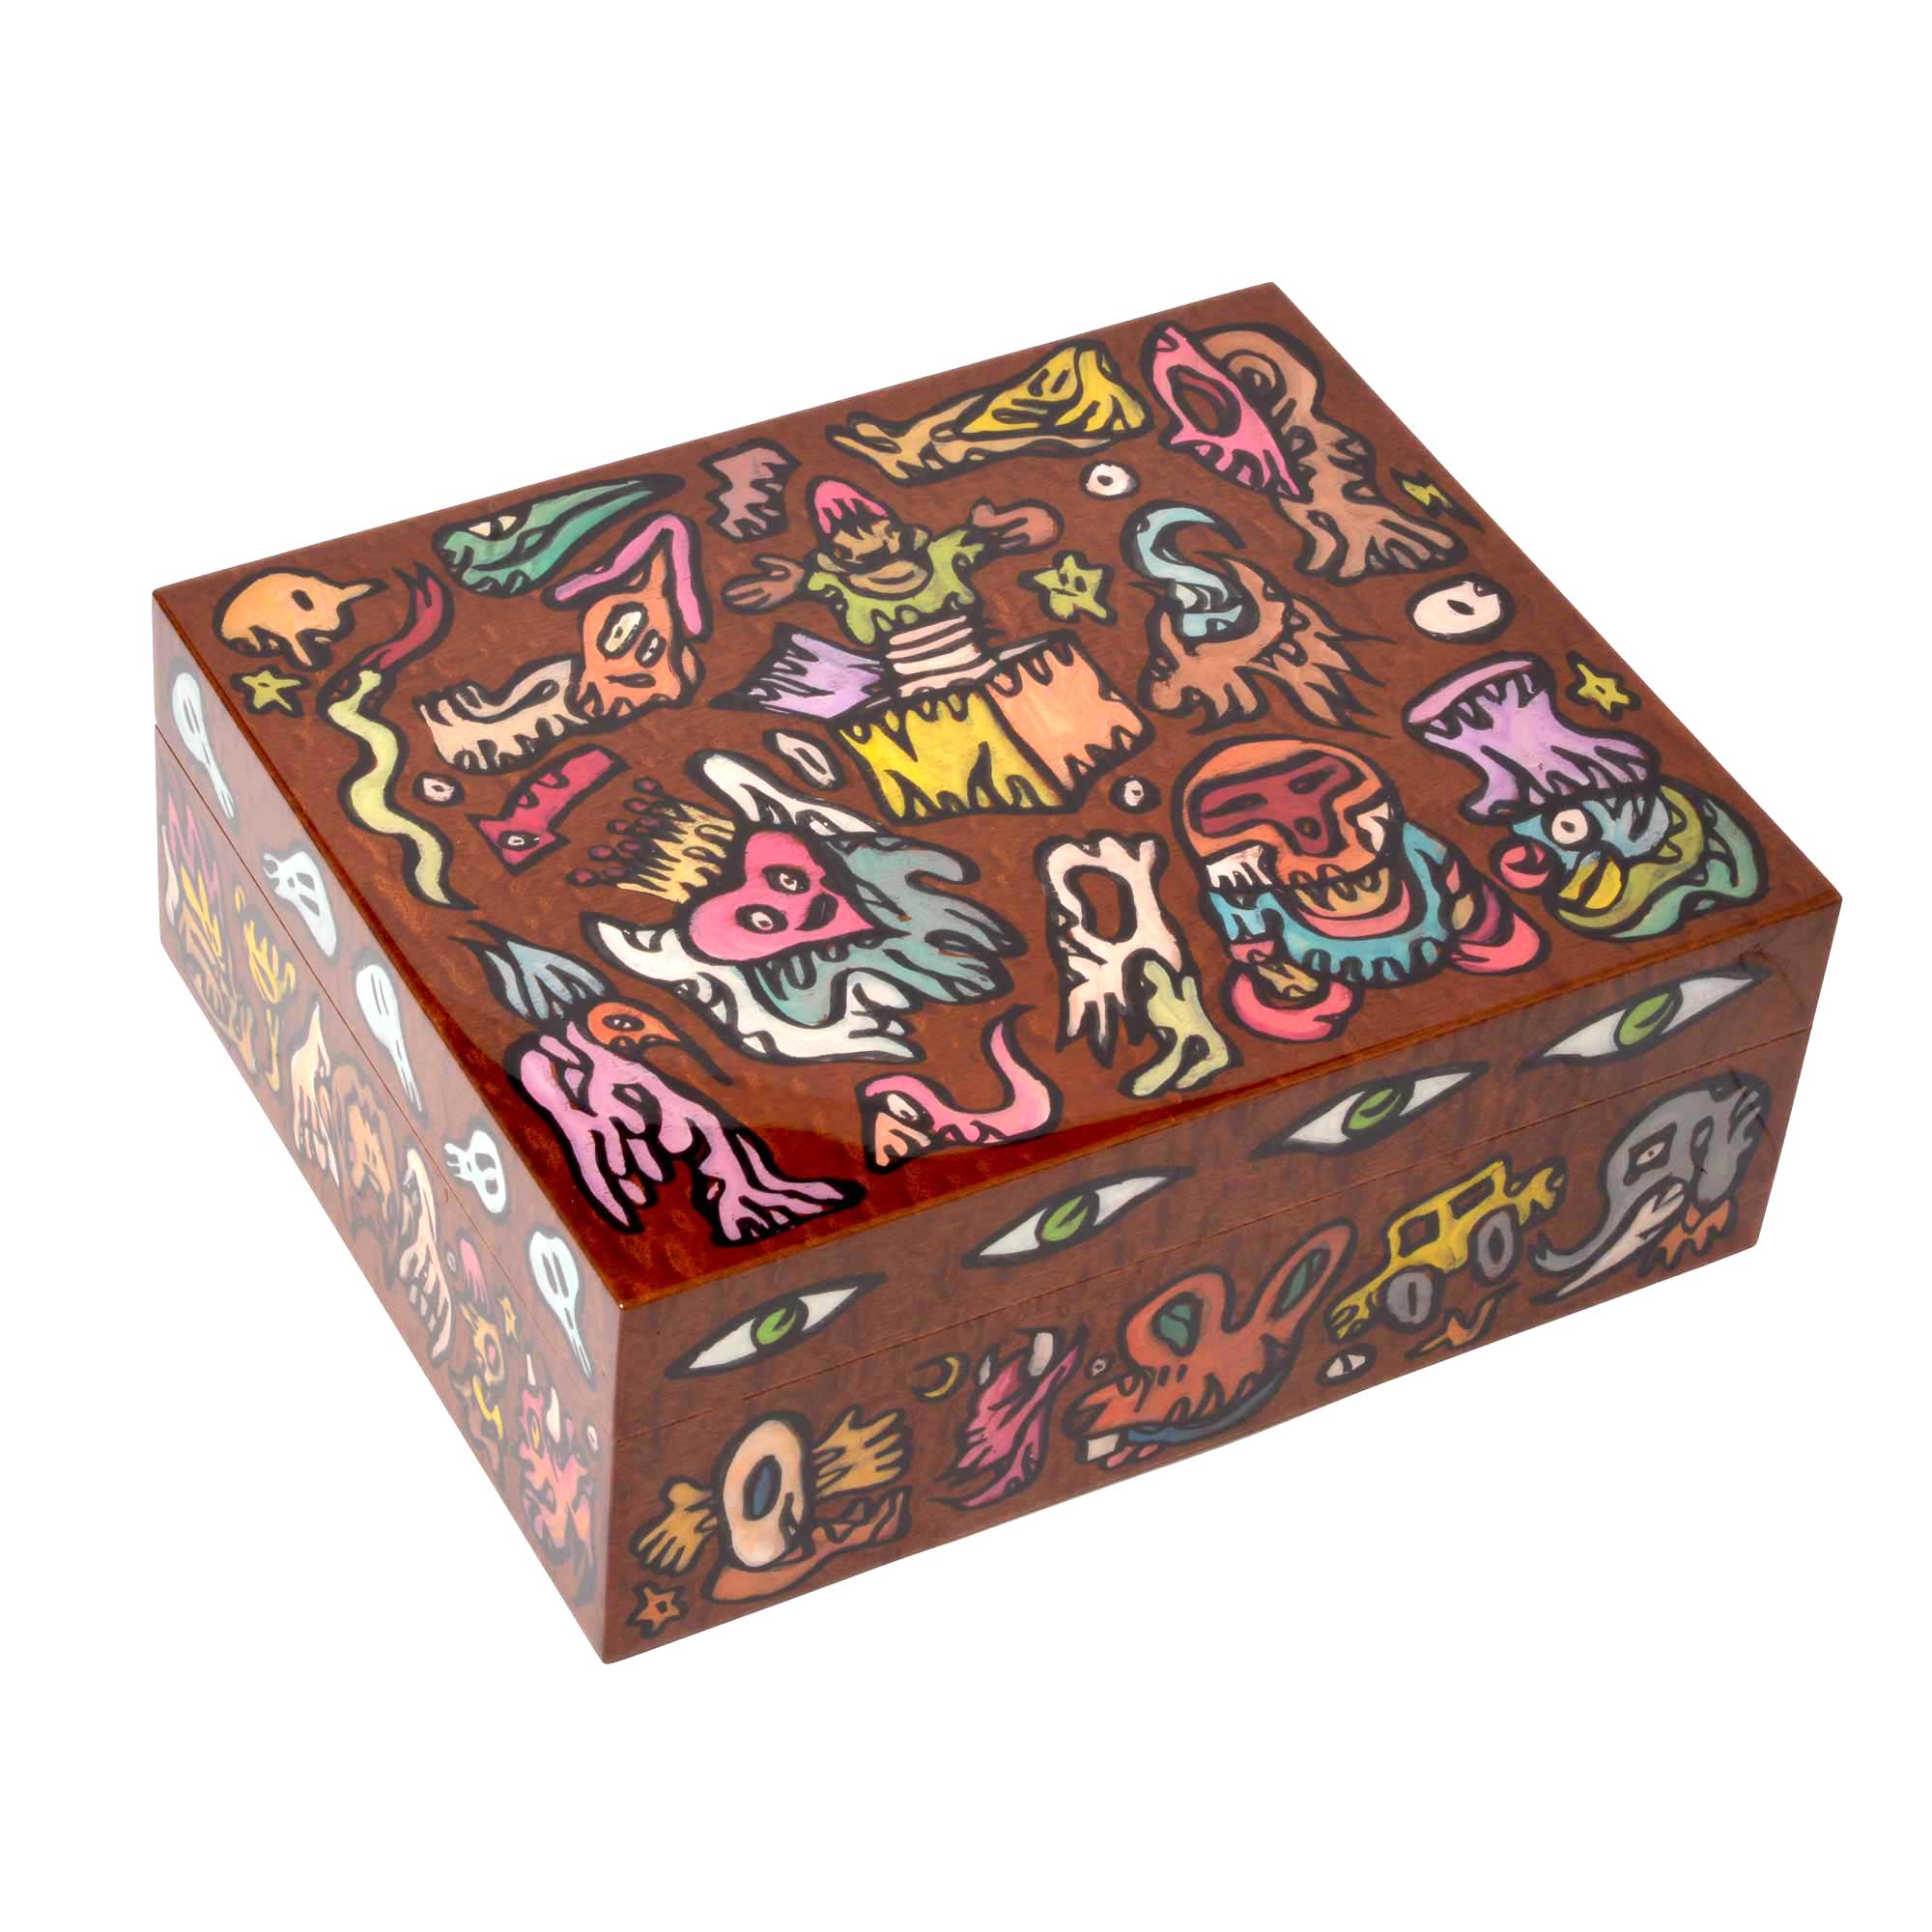 Joker" 75-cigar box set by artist Fabien Verschaere